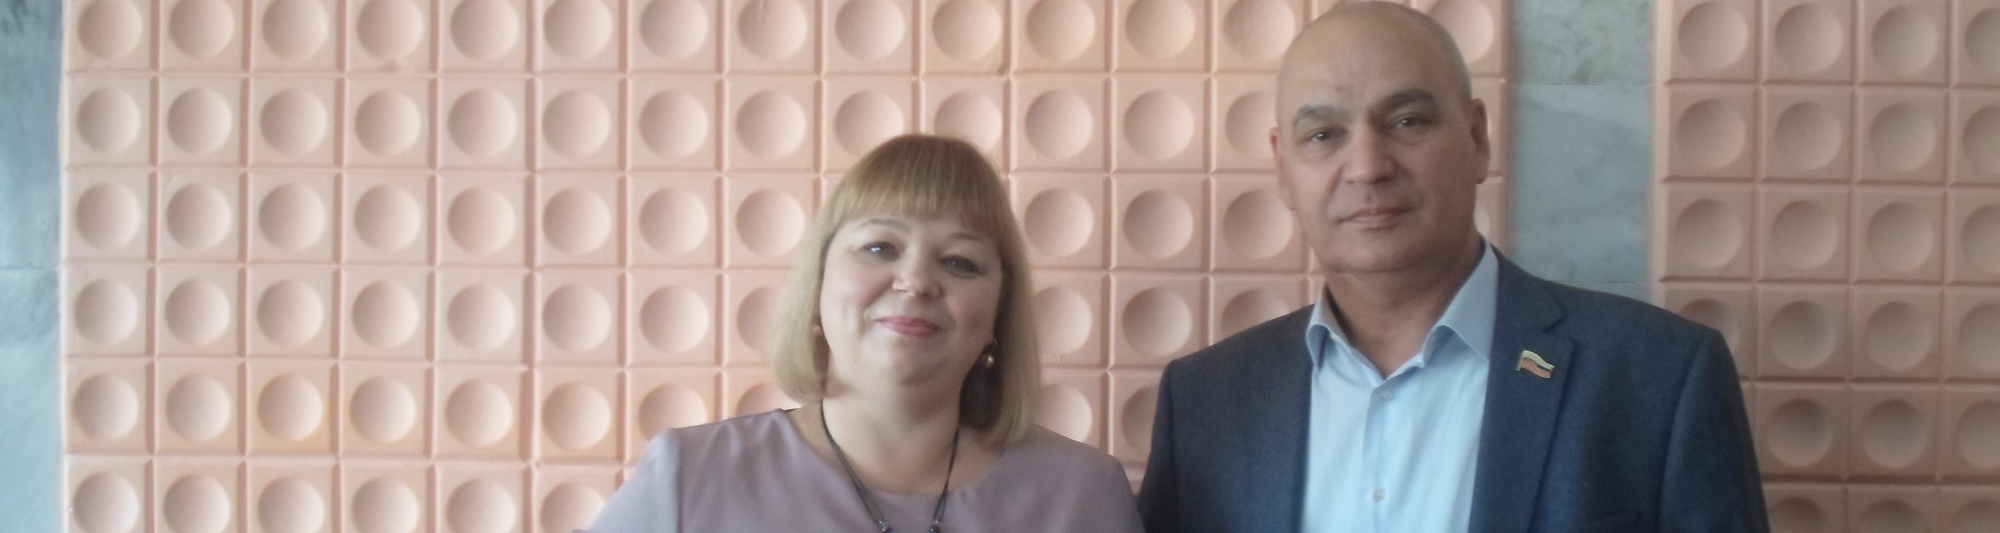 Игорь Морозов поздравил учителей гимназии № 56 с профессиональным праздником